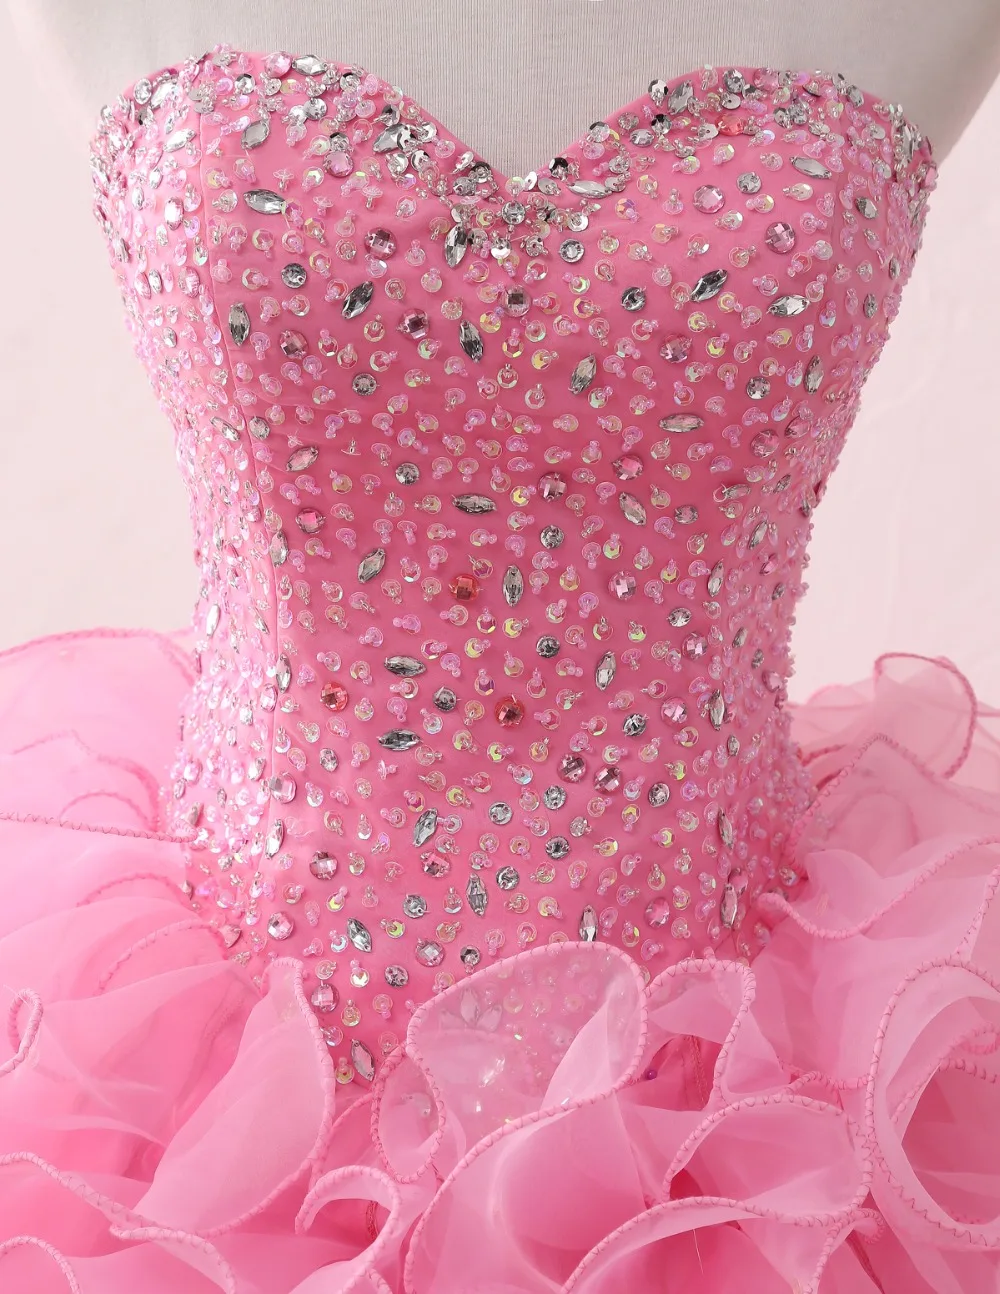 LOVSKYLINE горячее элегантное Милое Свадебное Платье розовое реальное изображение Многоуровневая вышивка бисером кристалл Индивидуальный размер vestido de noiva